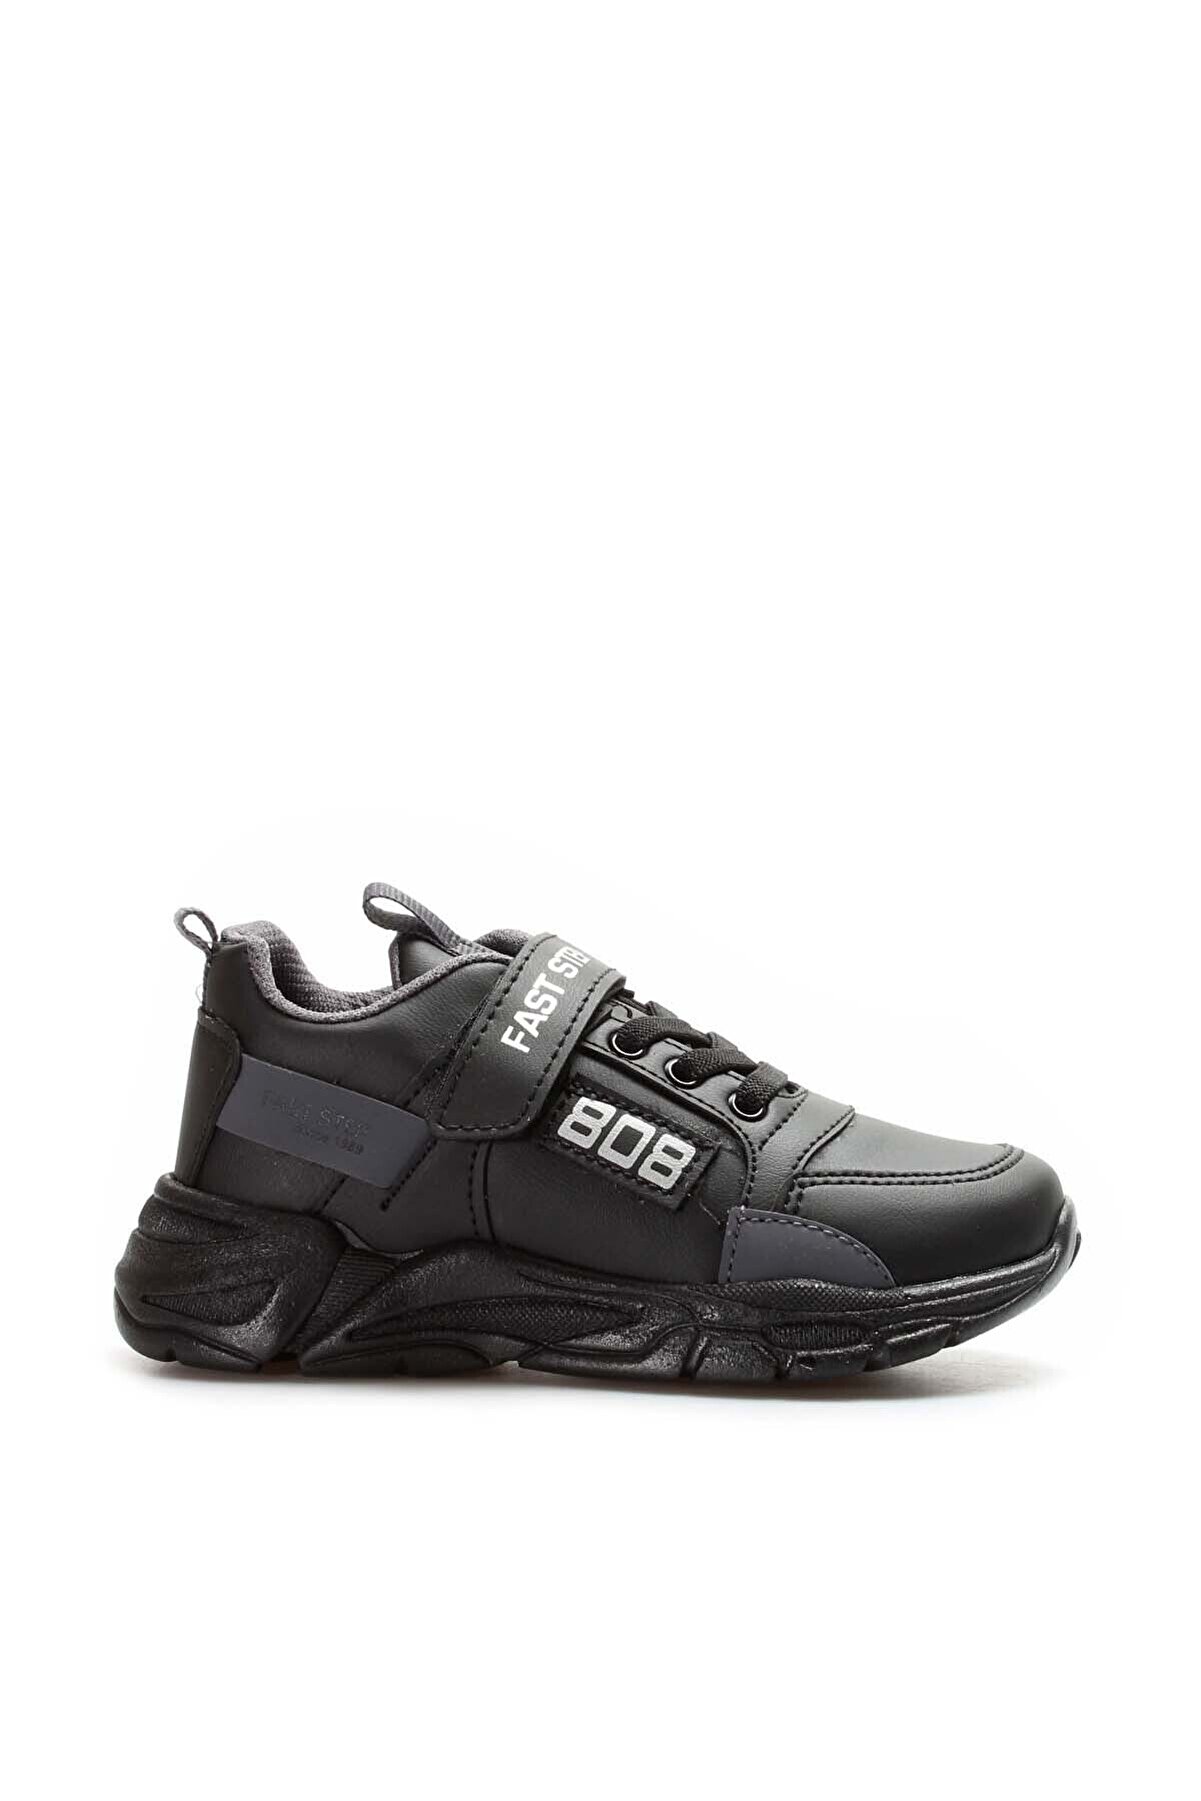 Fast Step Siyah Füme Unisex Çocuk Sneaker Ayakkabı 868xca808